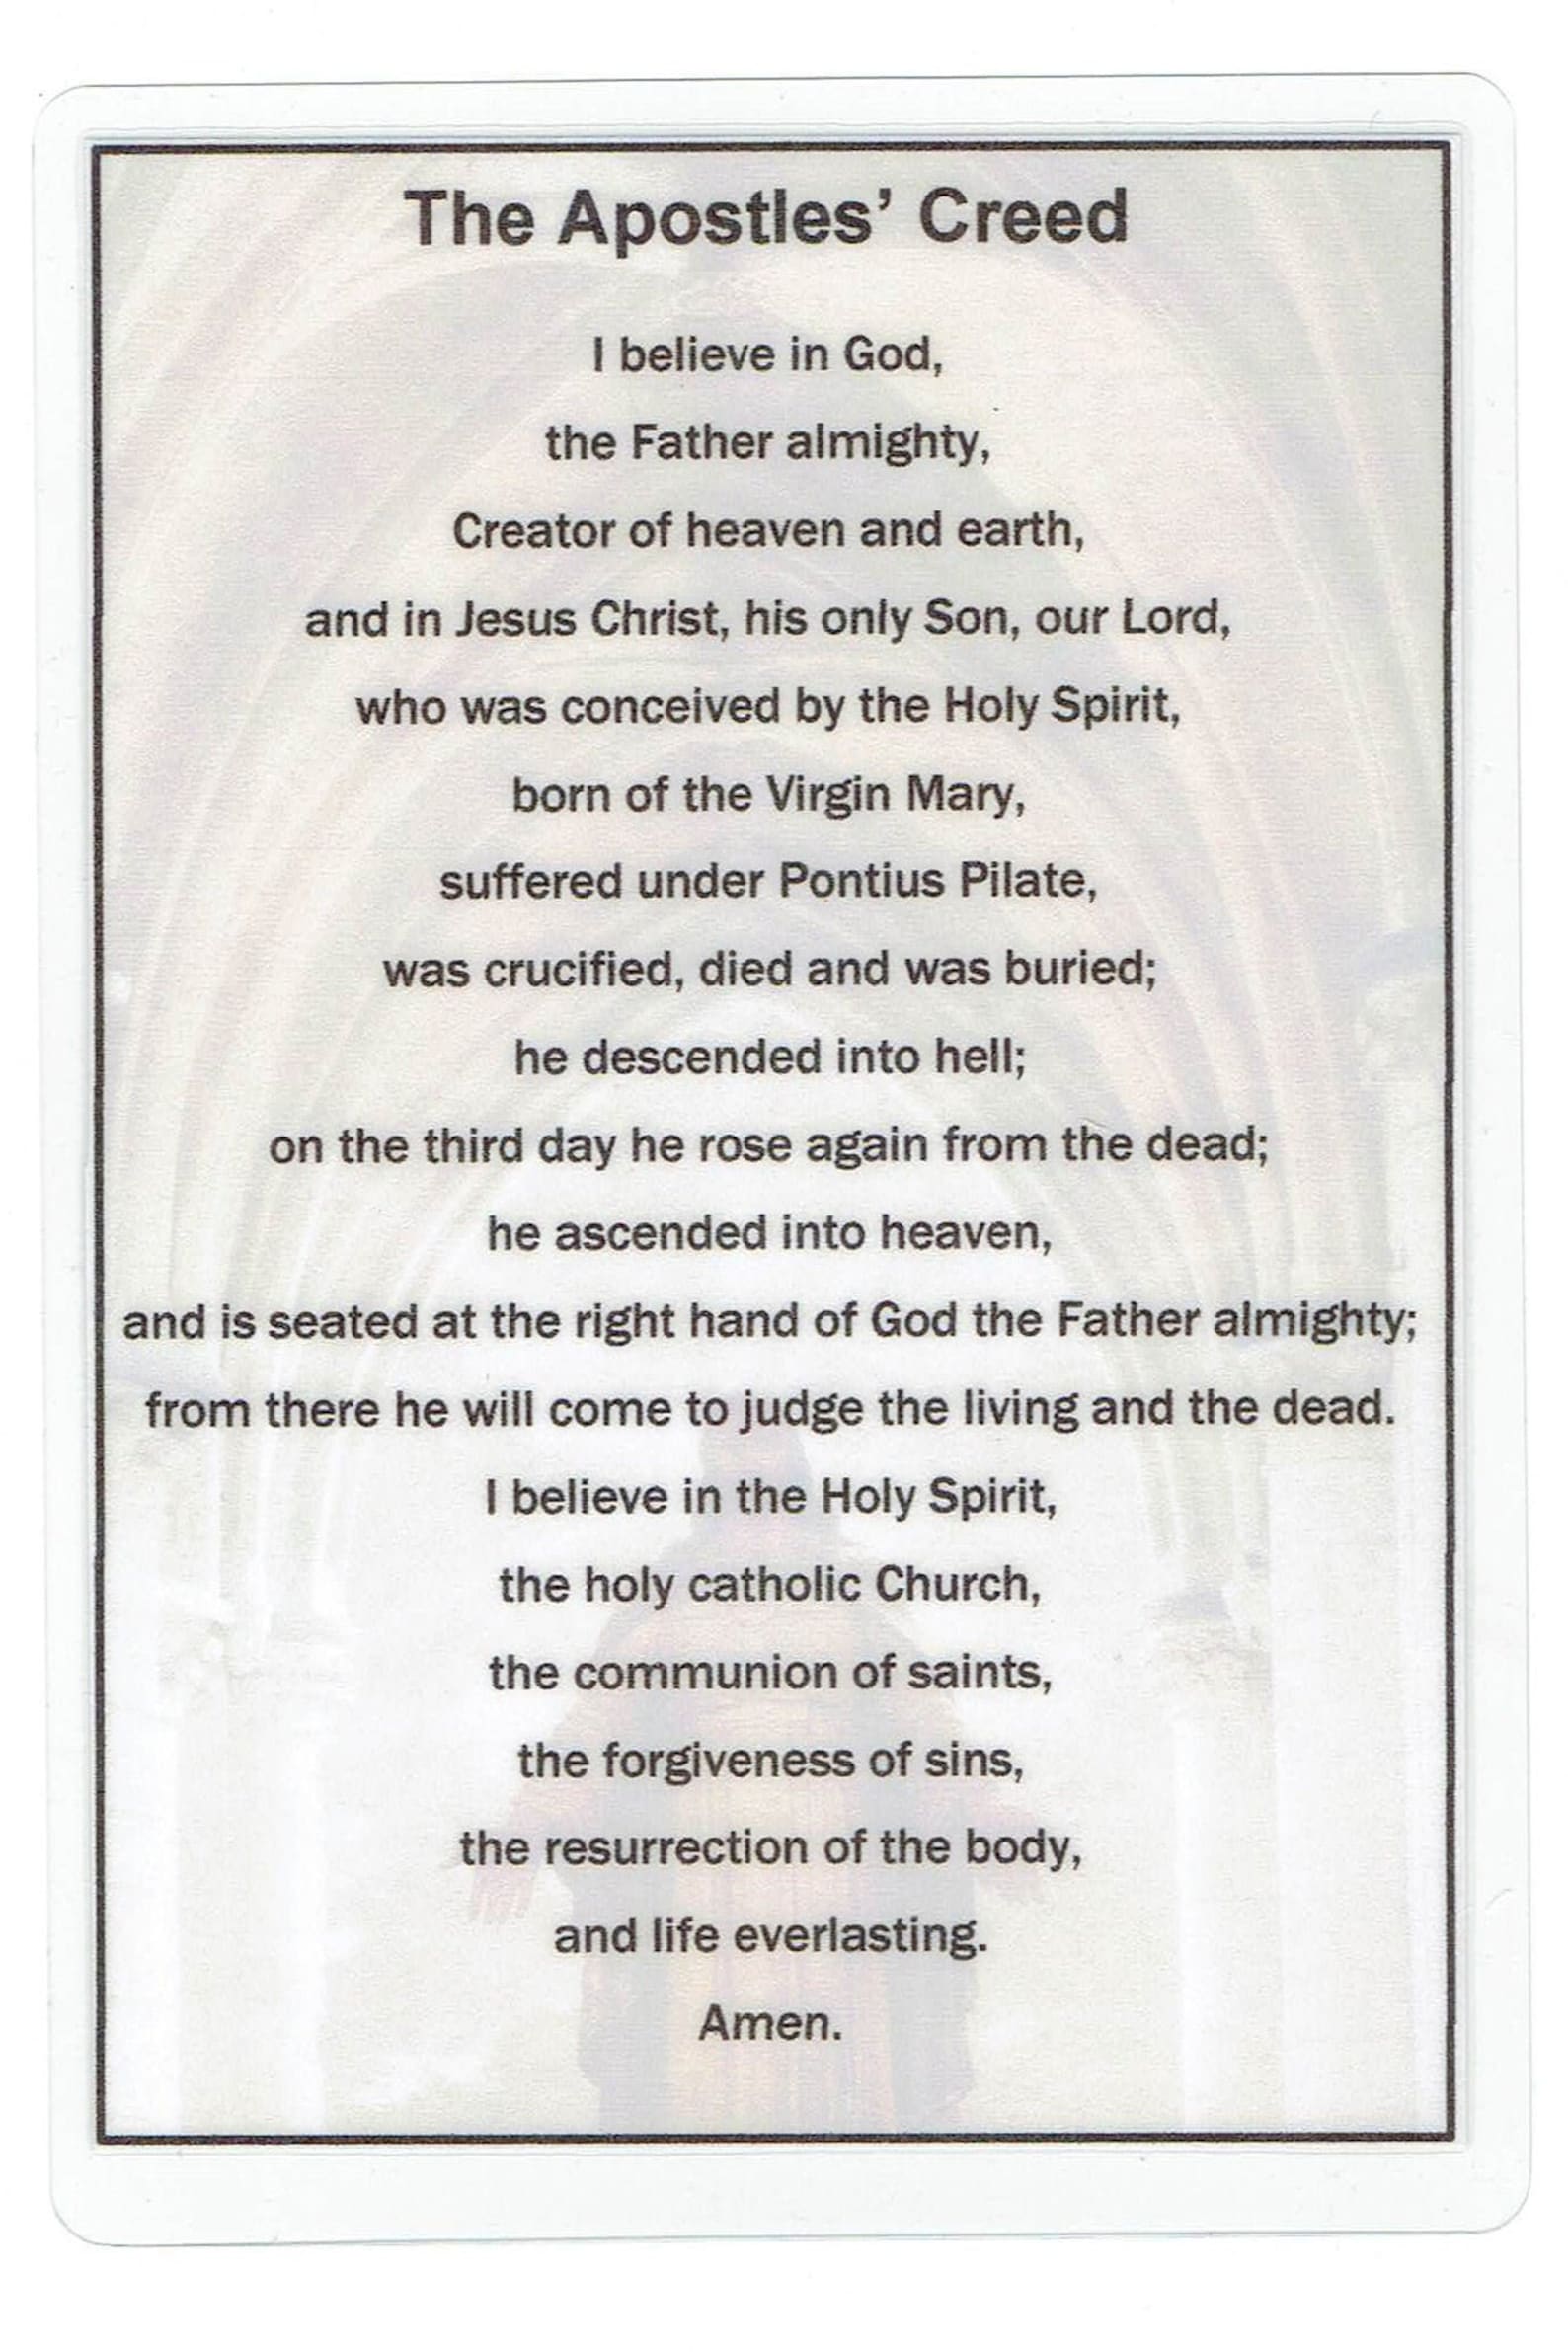 laminated-apostles-creed-flashcard-catholic-etsy